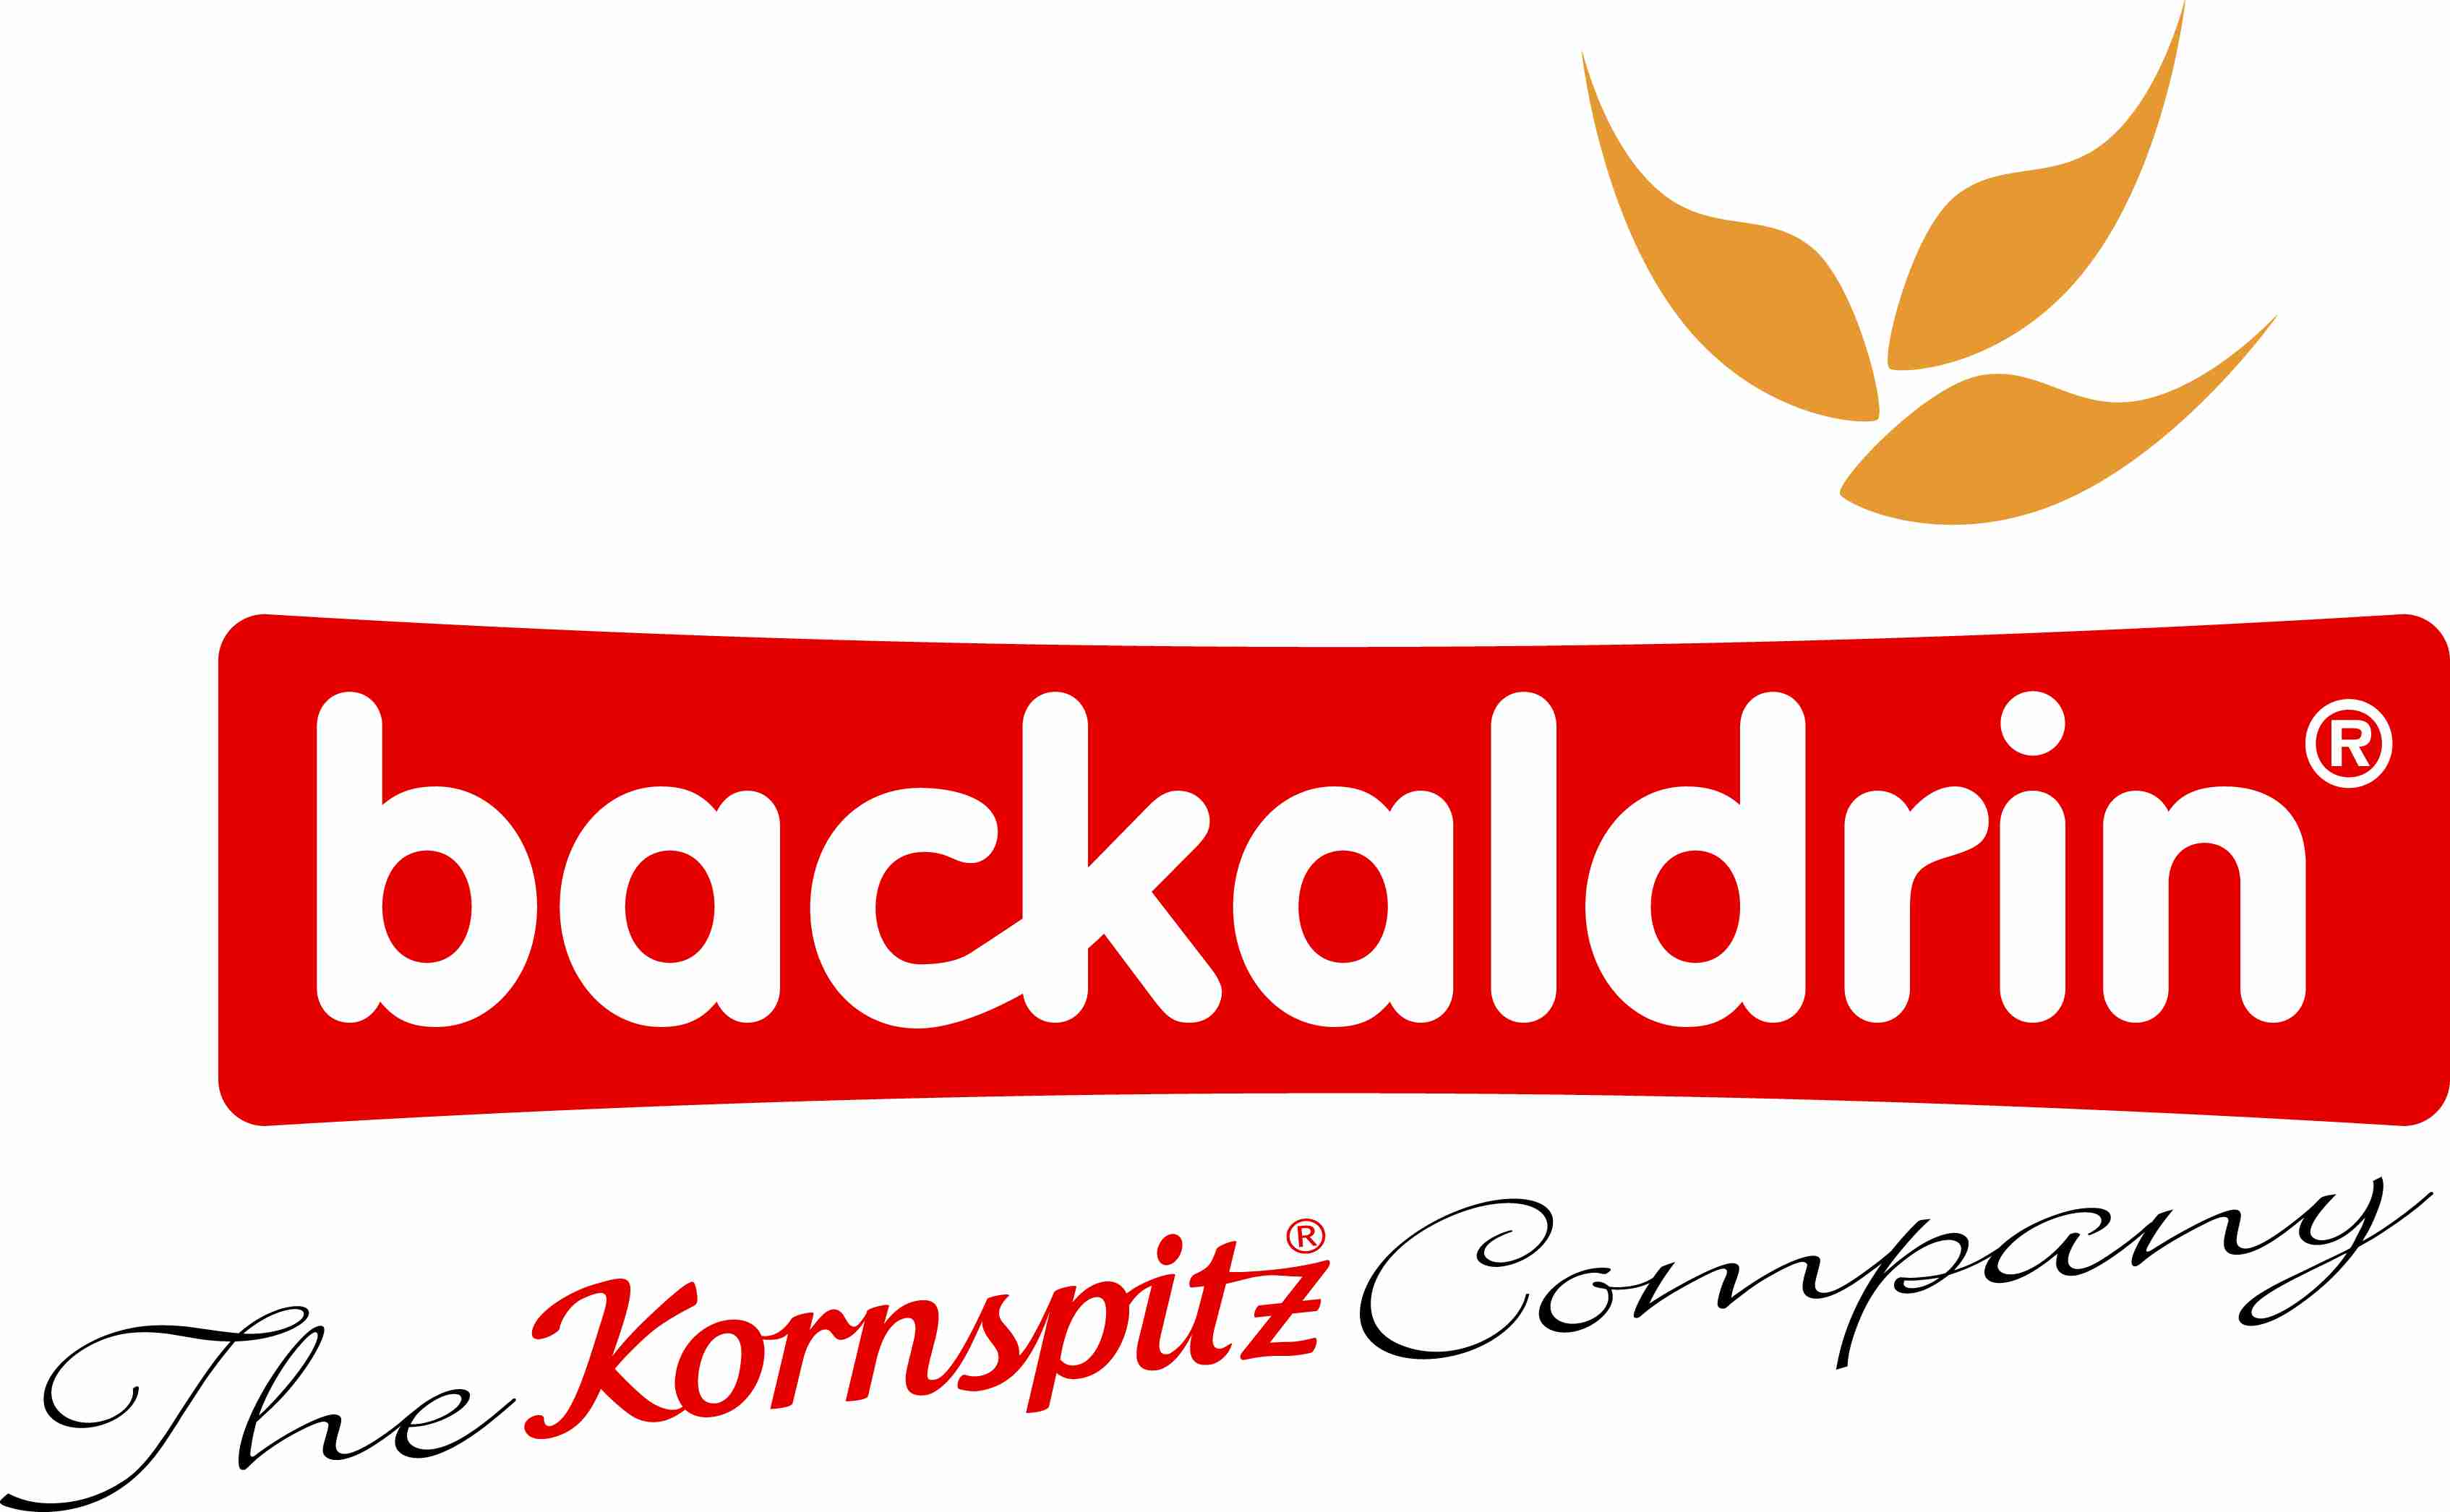 
Соглашение о сотрудничестве между компаниями Backaldrin Arab Jordan и Backaldrin Россия